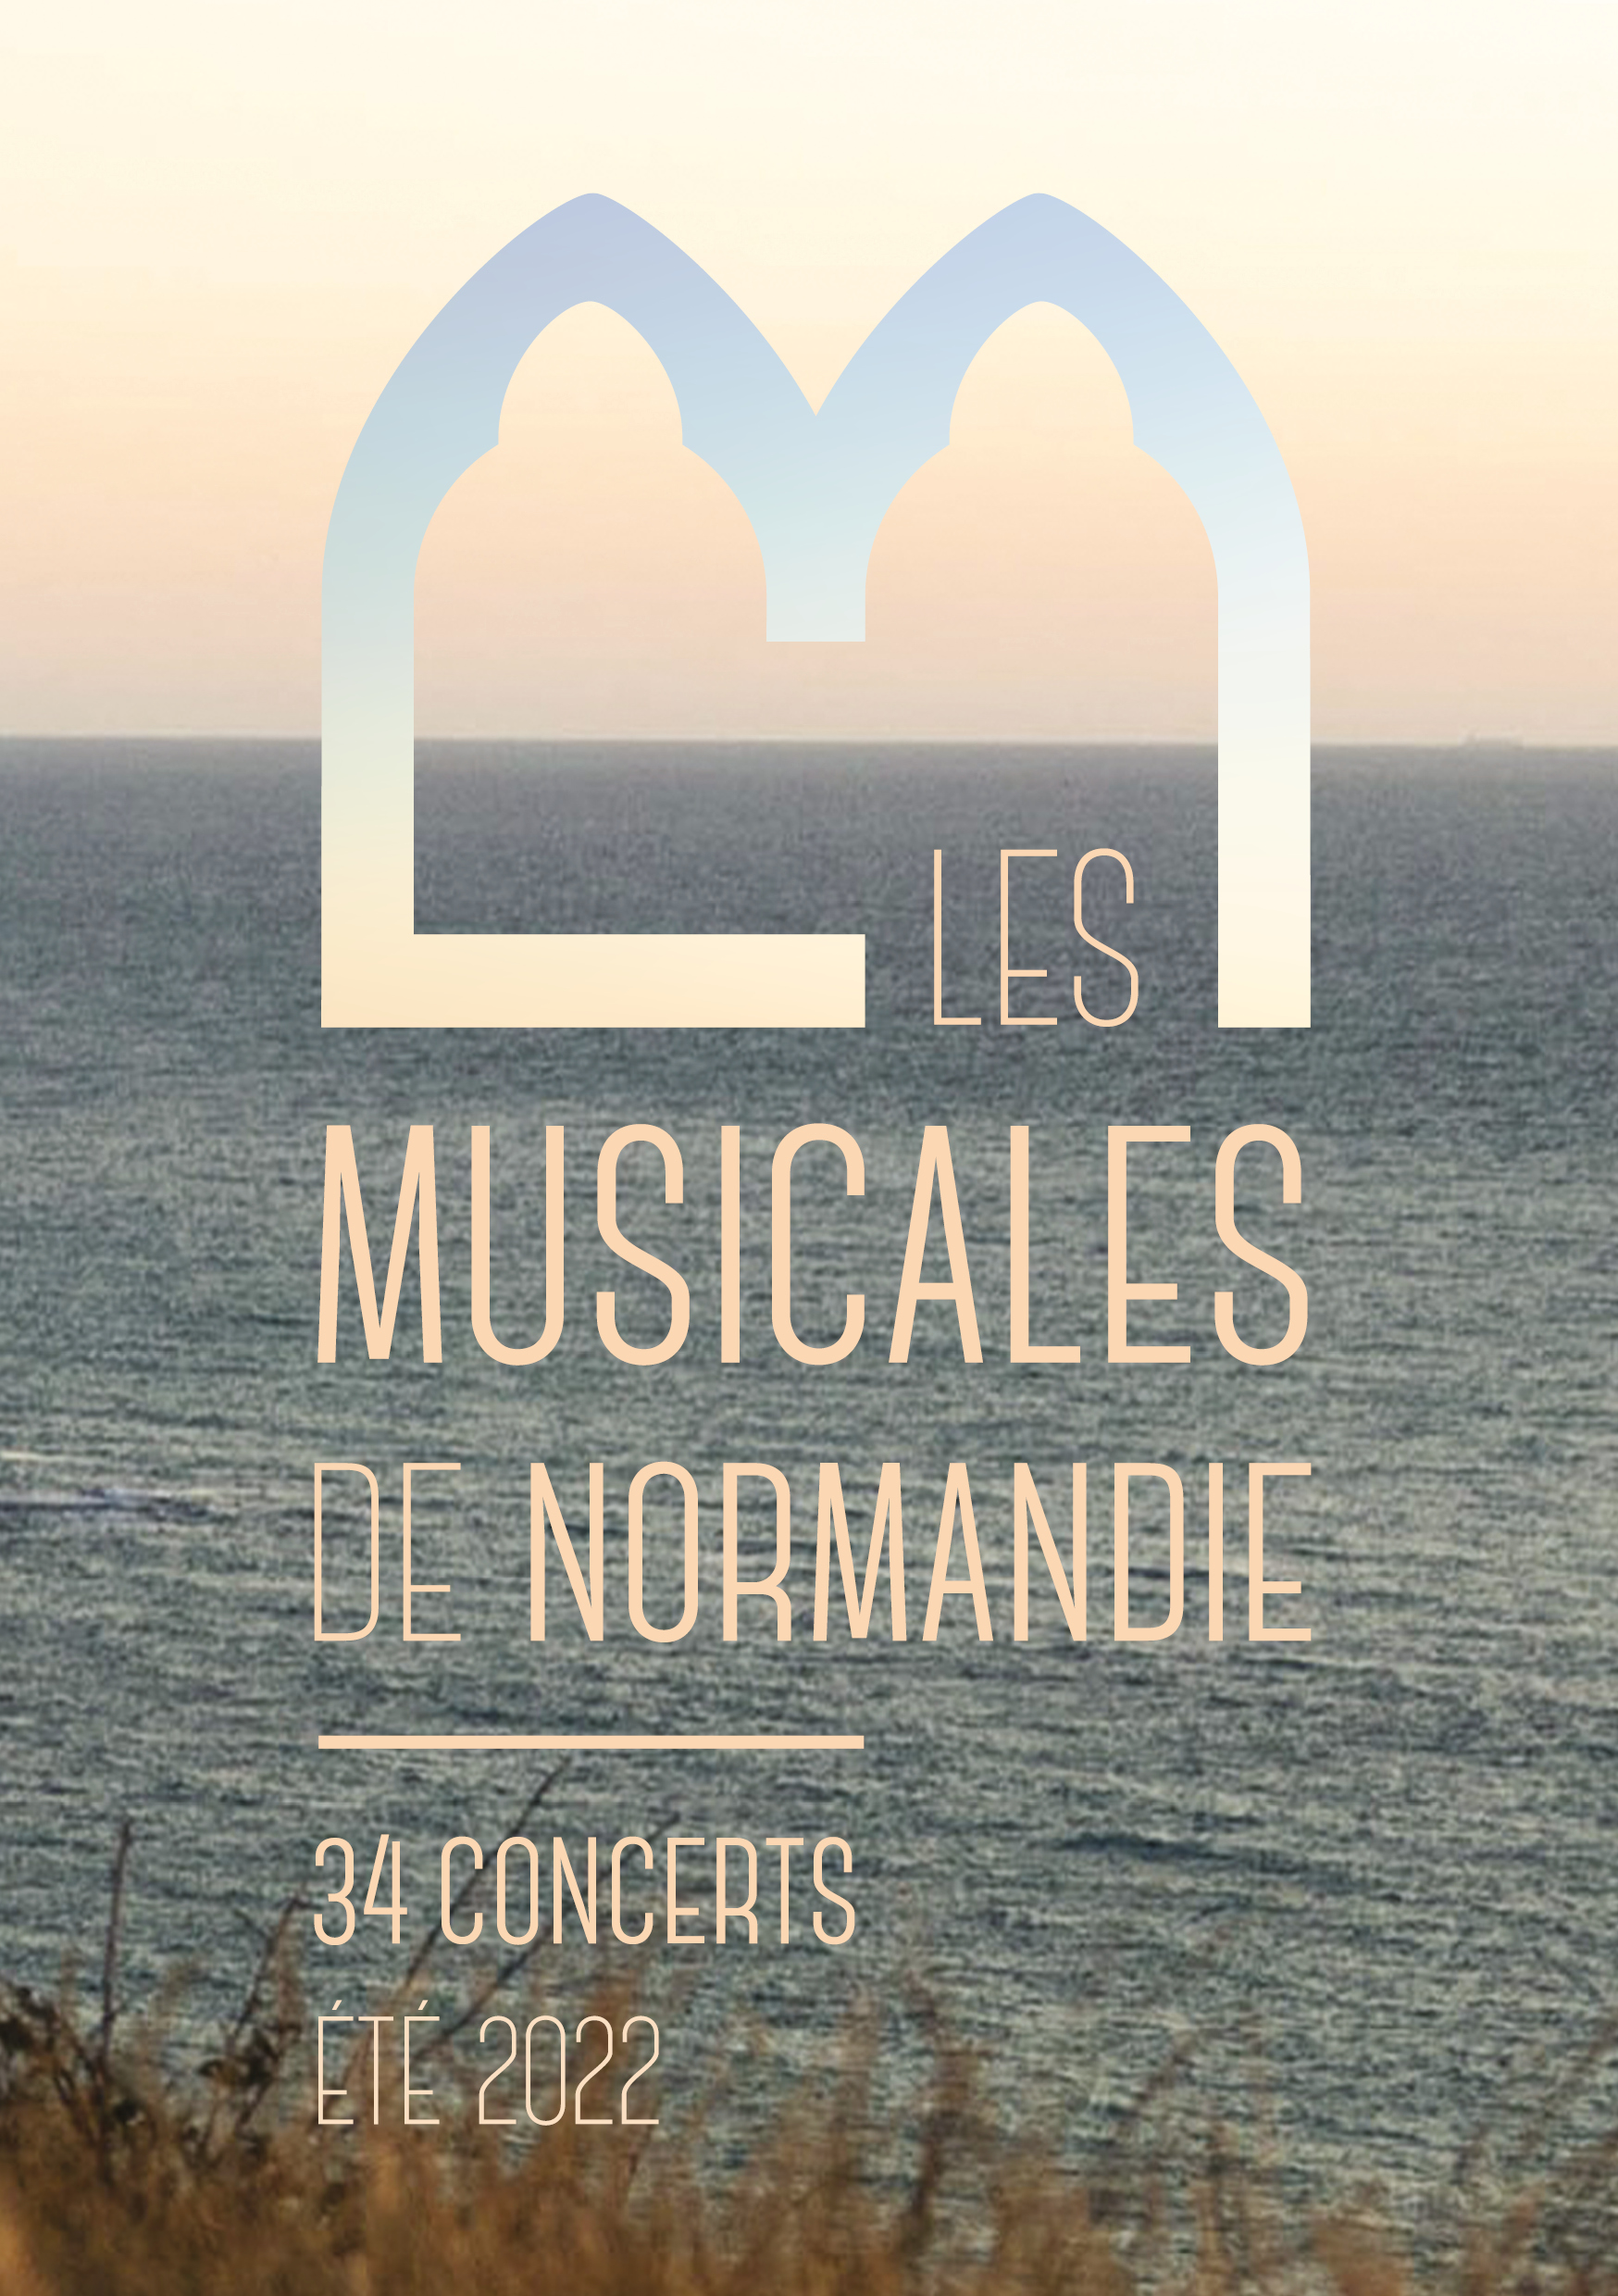 Crédit : Les Musicales de Normandie